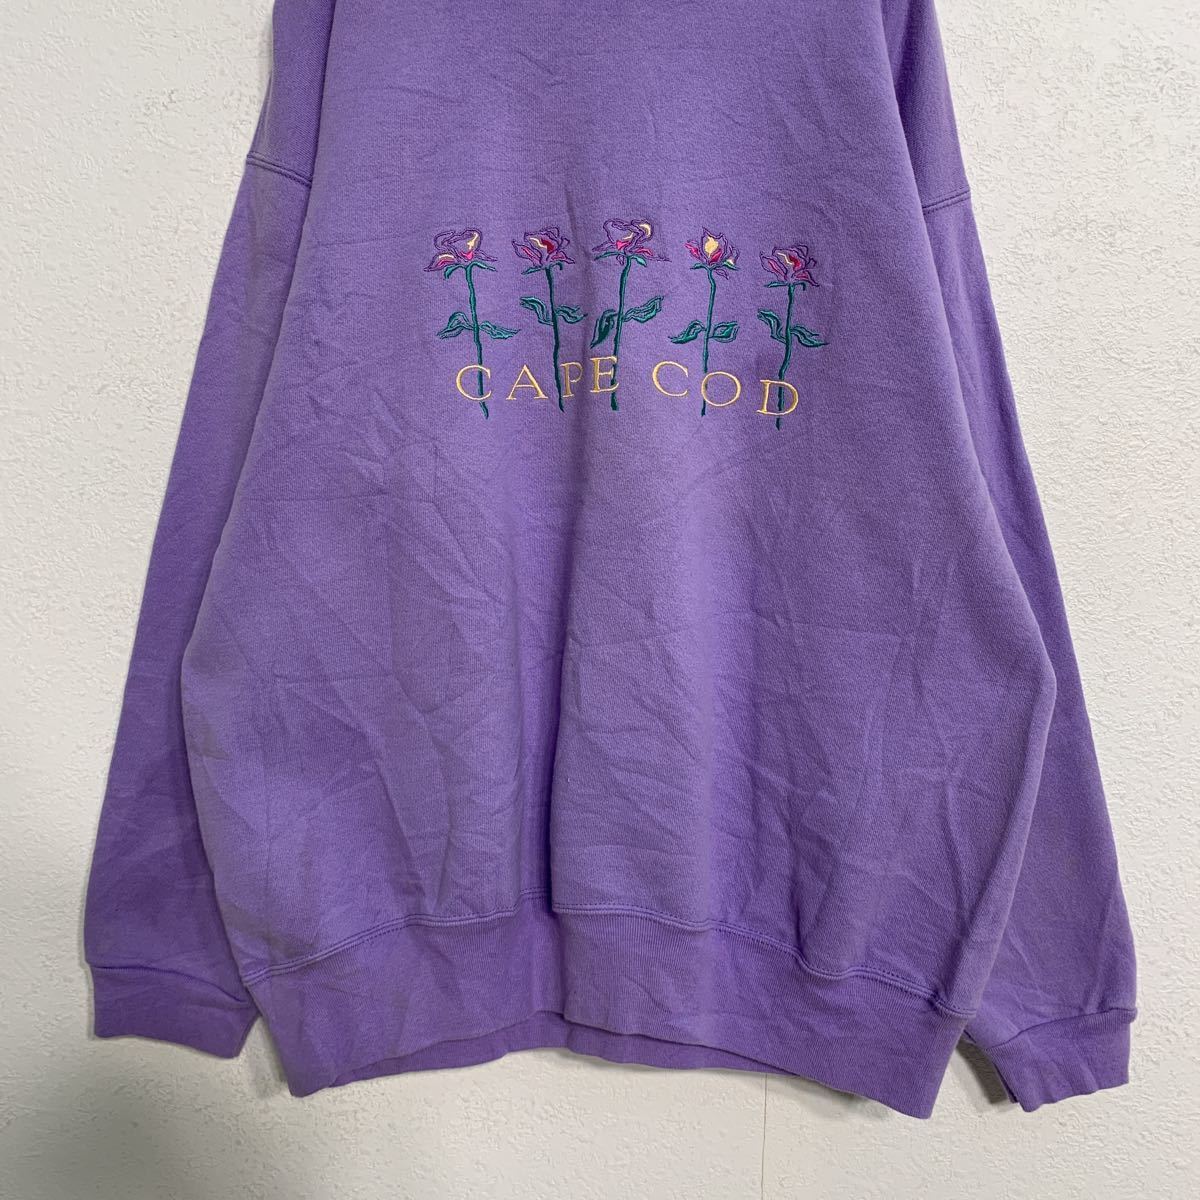 CUFFY\'S тренировочный футболка wi мужской L лиловый цветок вышивка retro обратная сторона ворсистый б/у одежда . America запас a408-5583